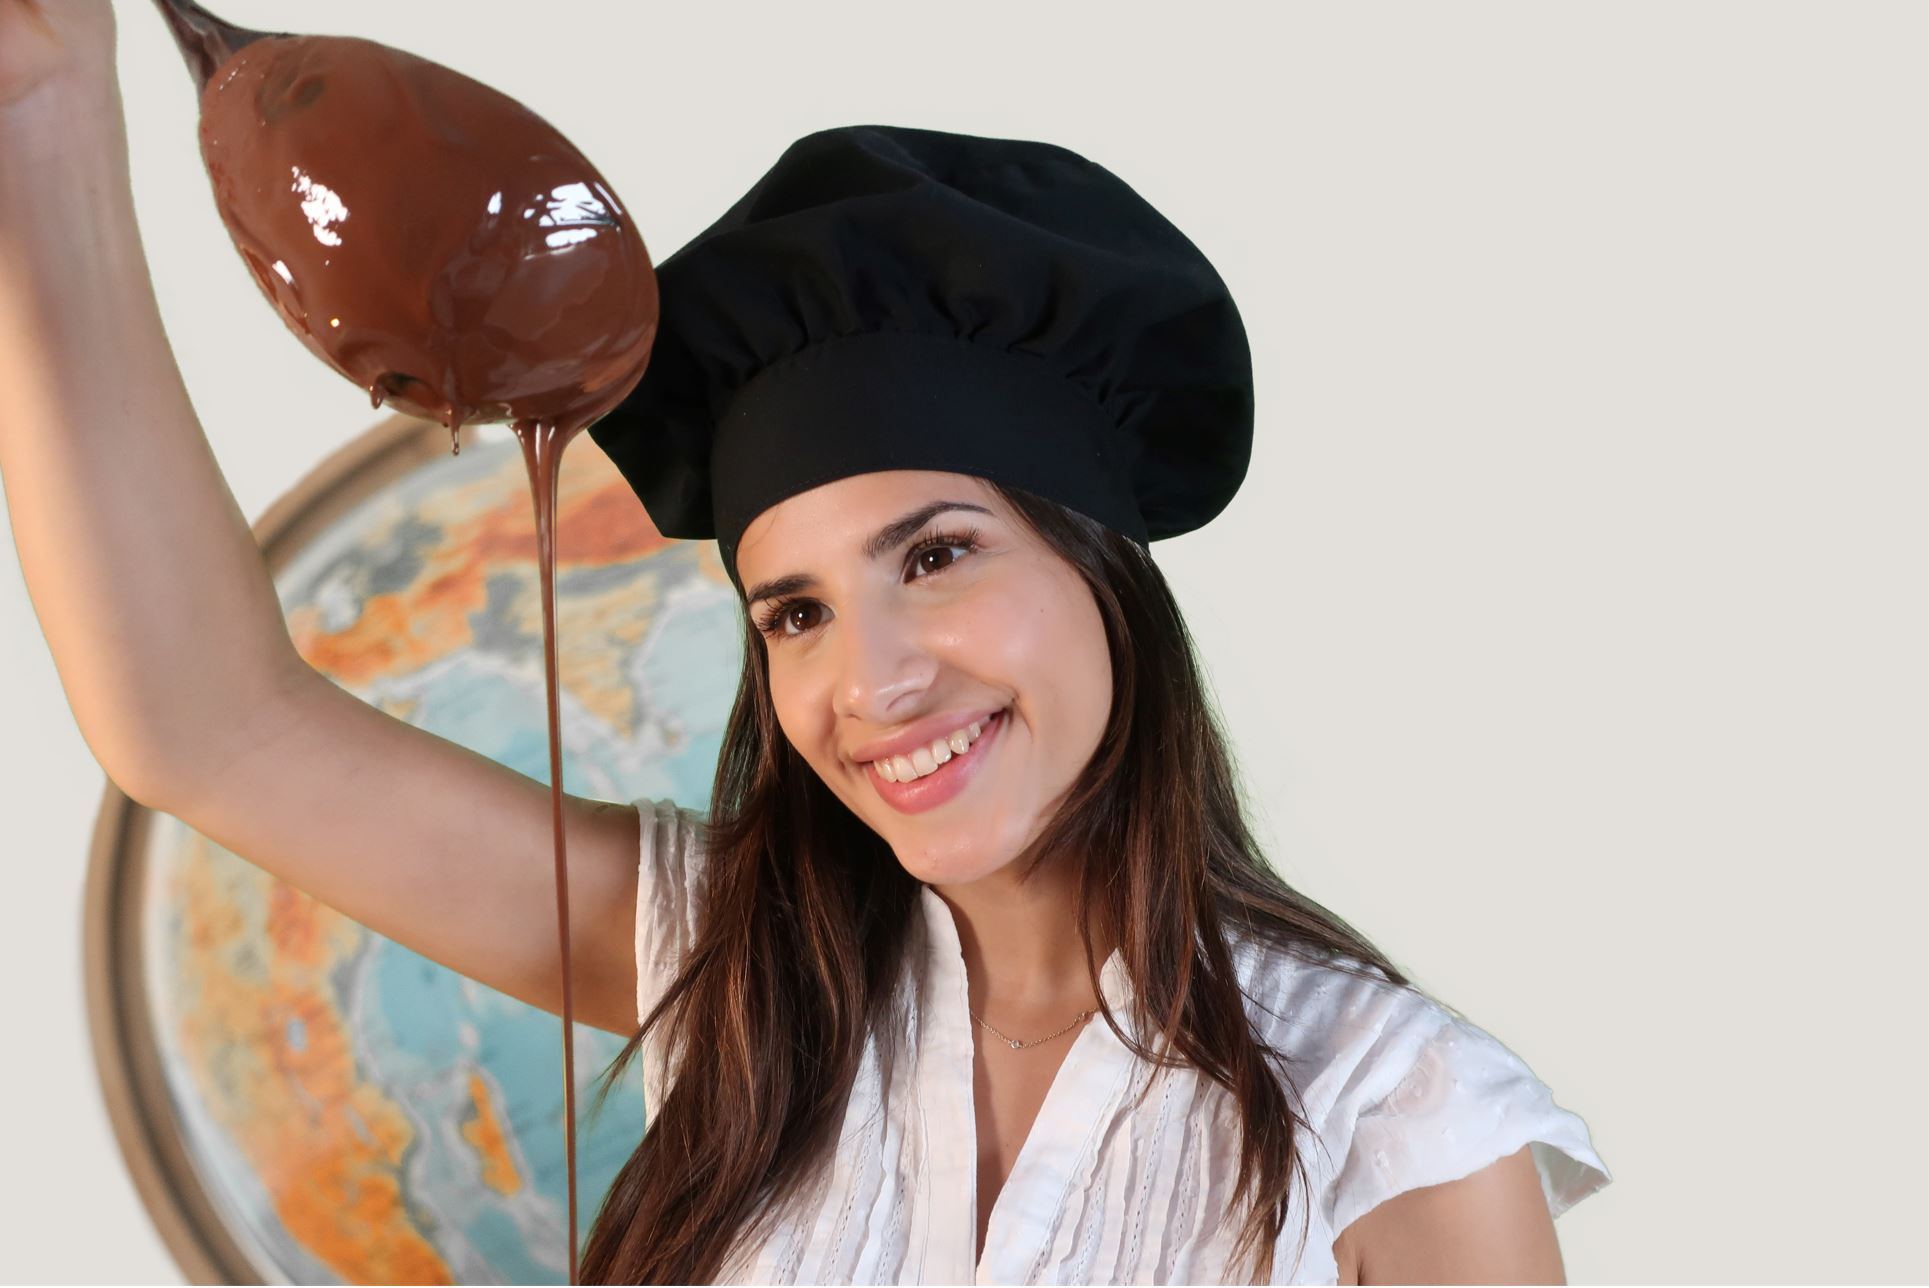 90 Min. Schokoladen-Workshop und -Tasting inkl. mexikanische Trinkschokolade für 4 Personen bei Soirée Chocolat